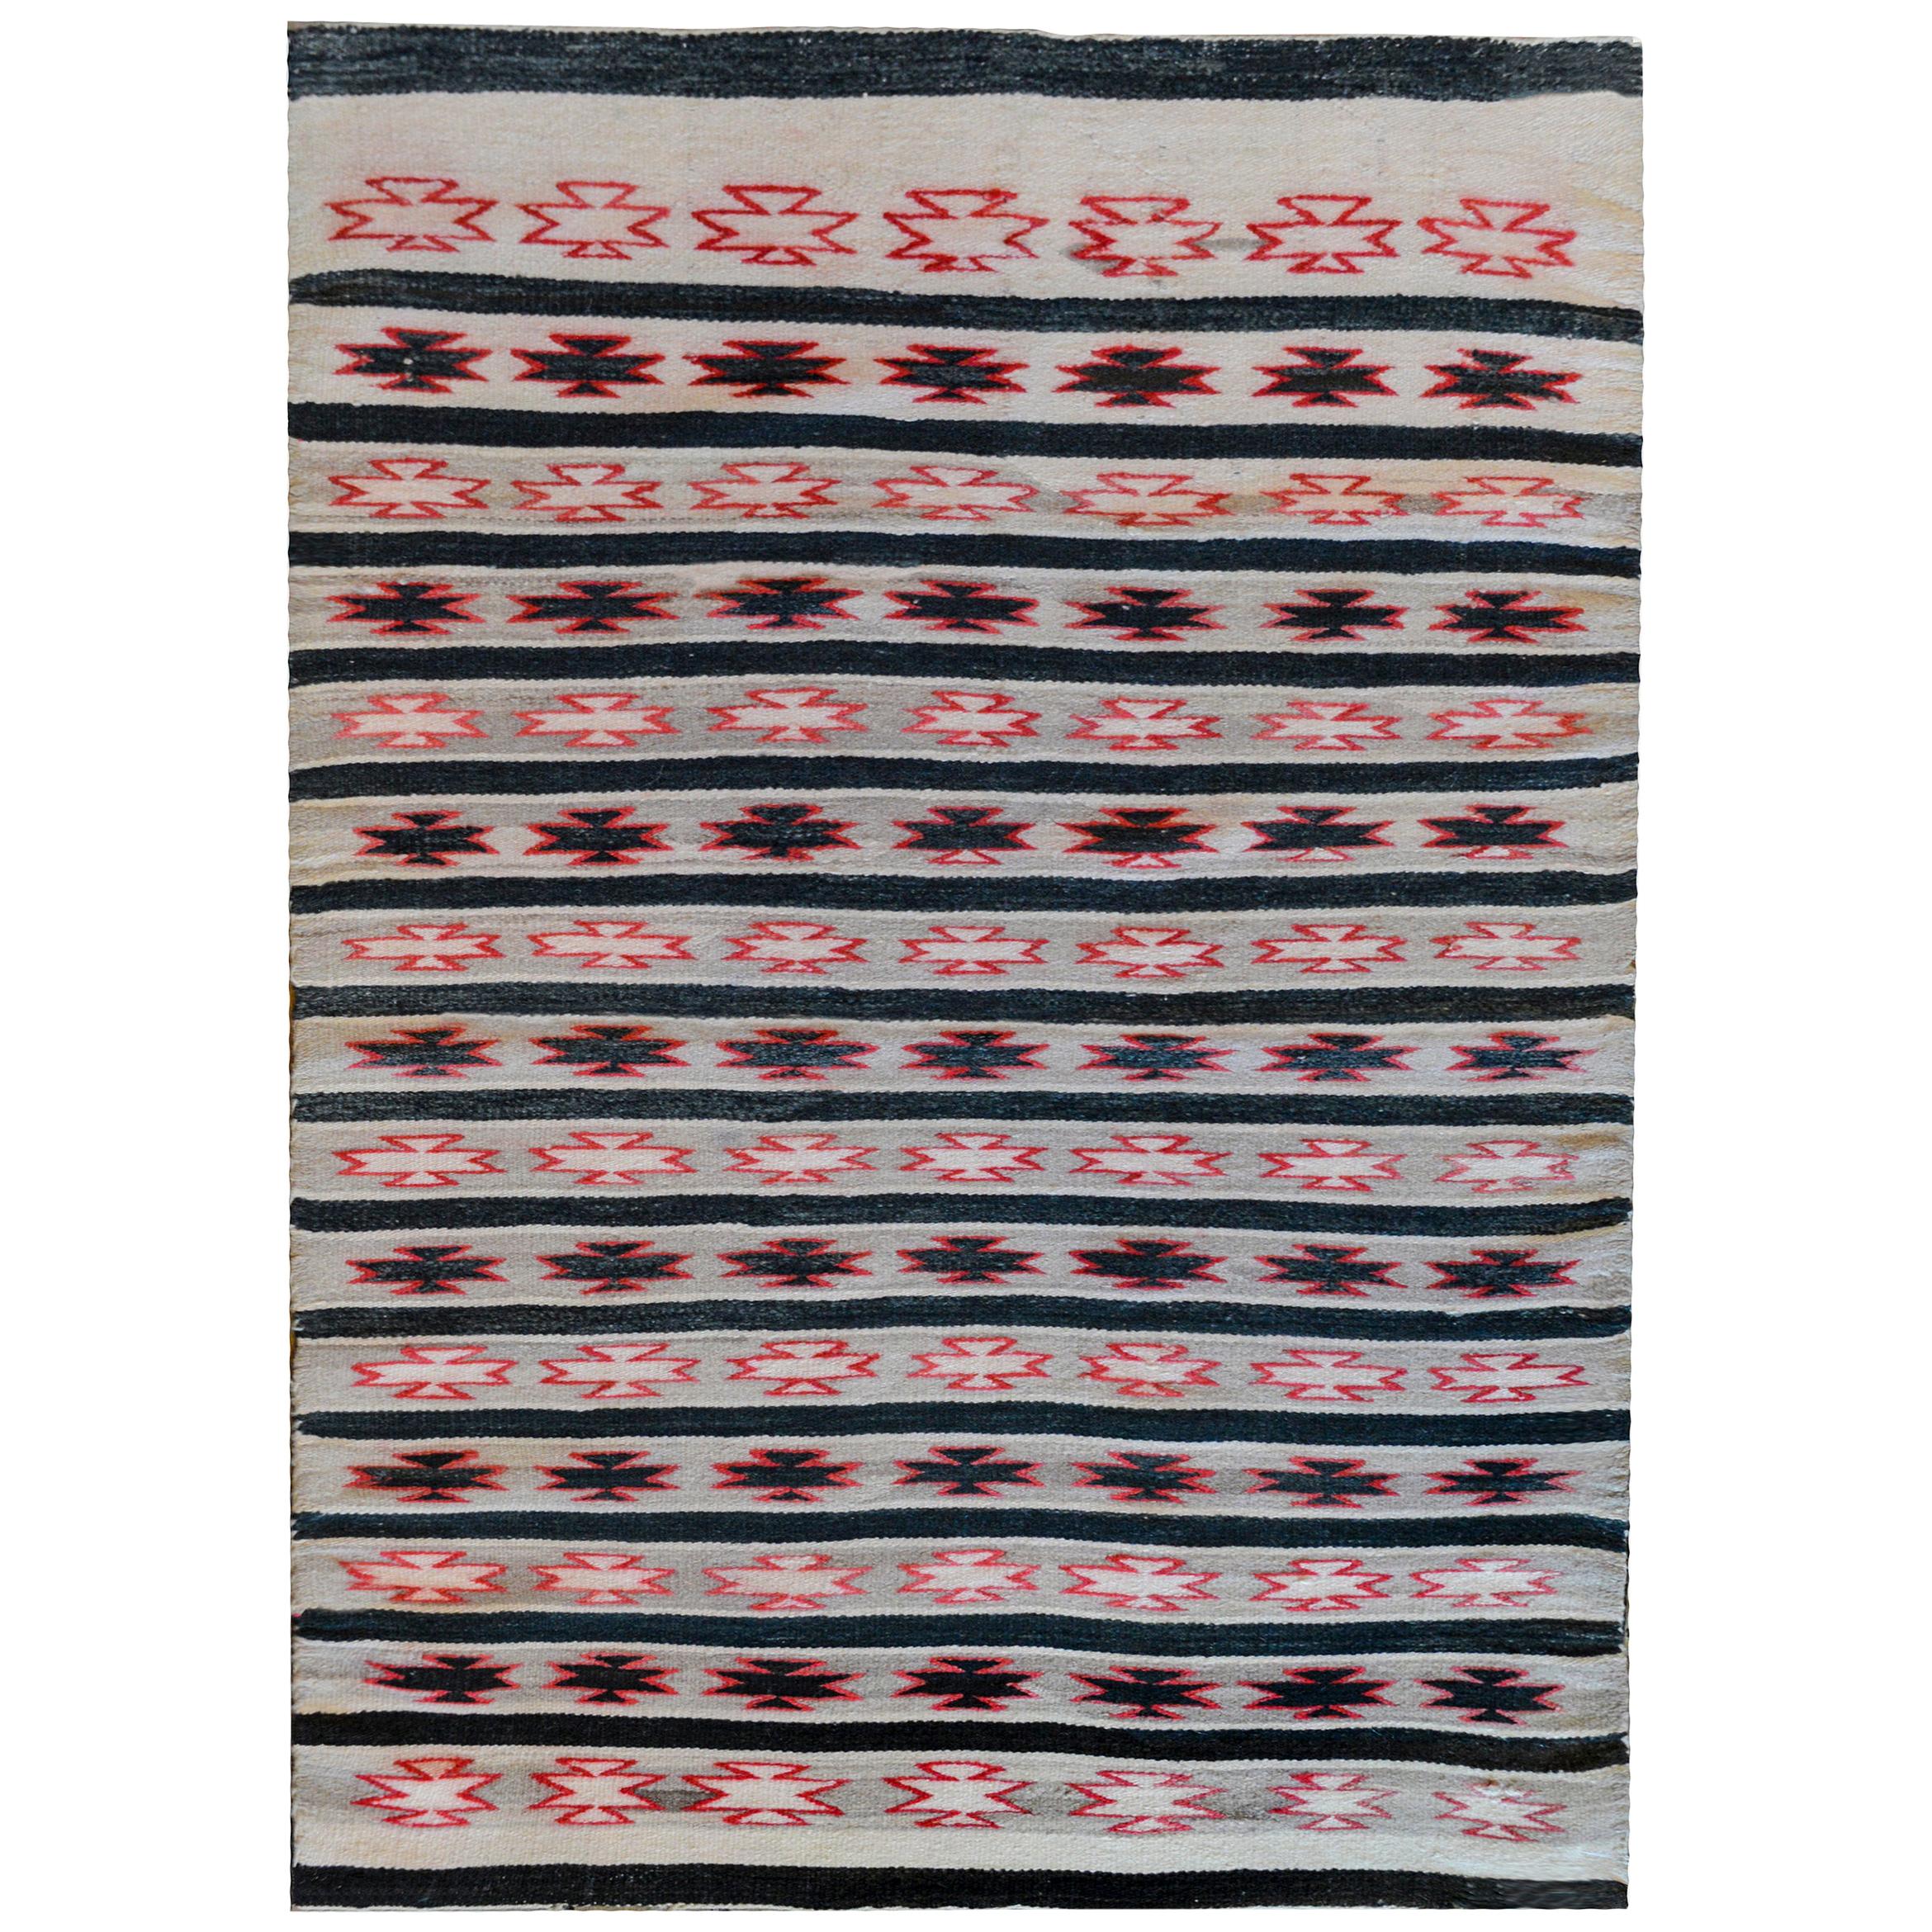 MId-20th Century Navajo Rug